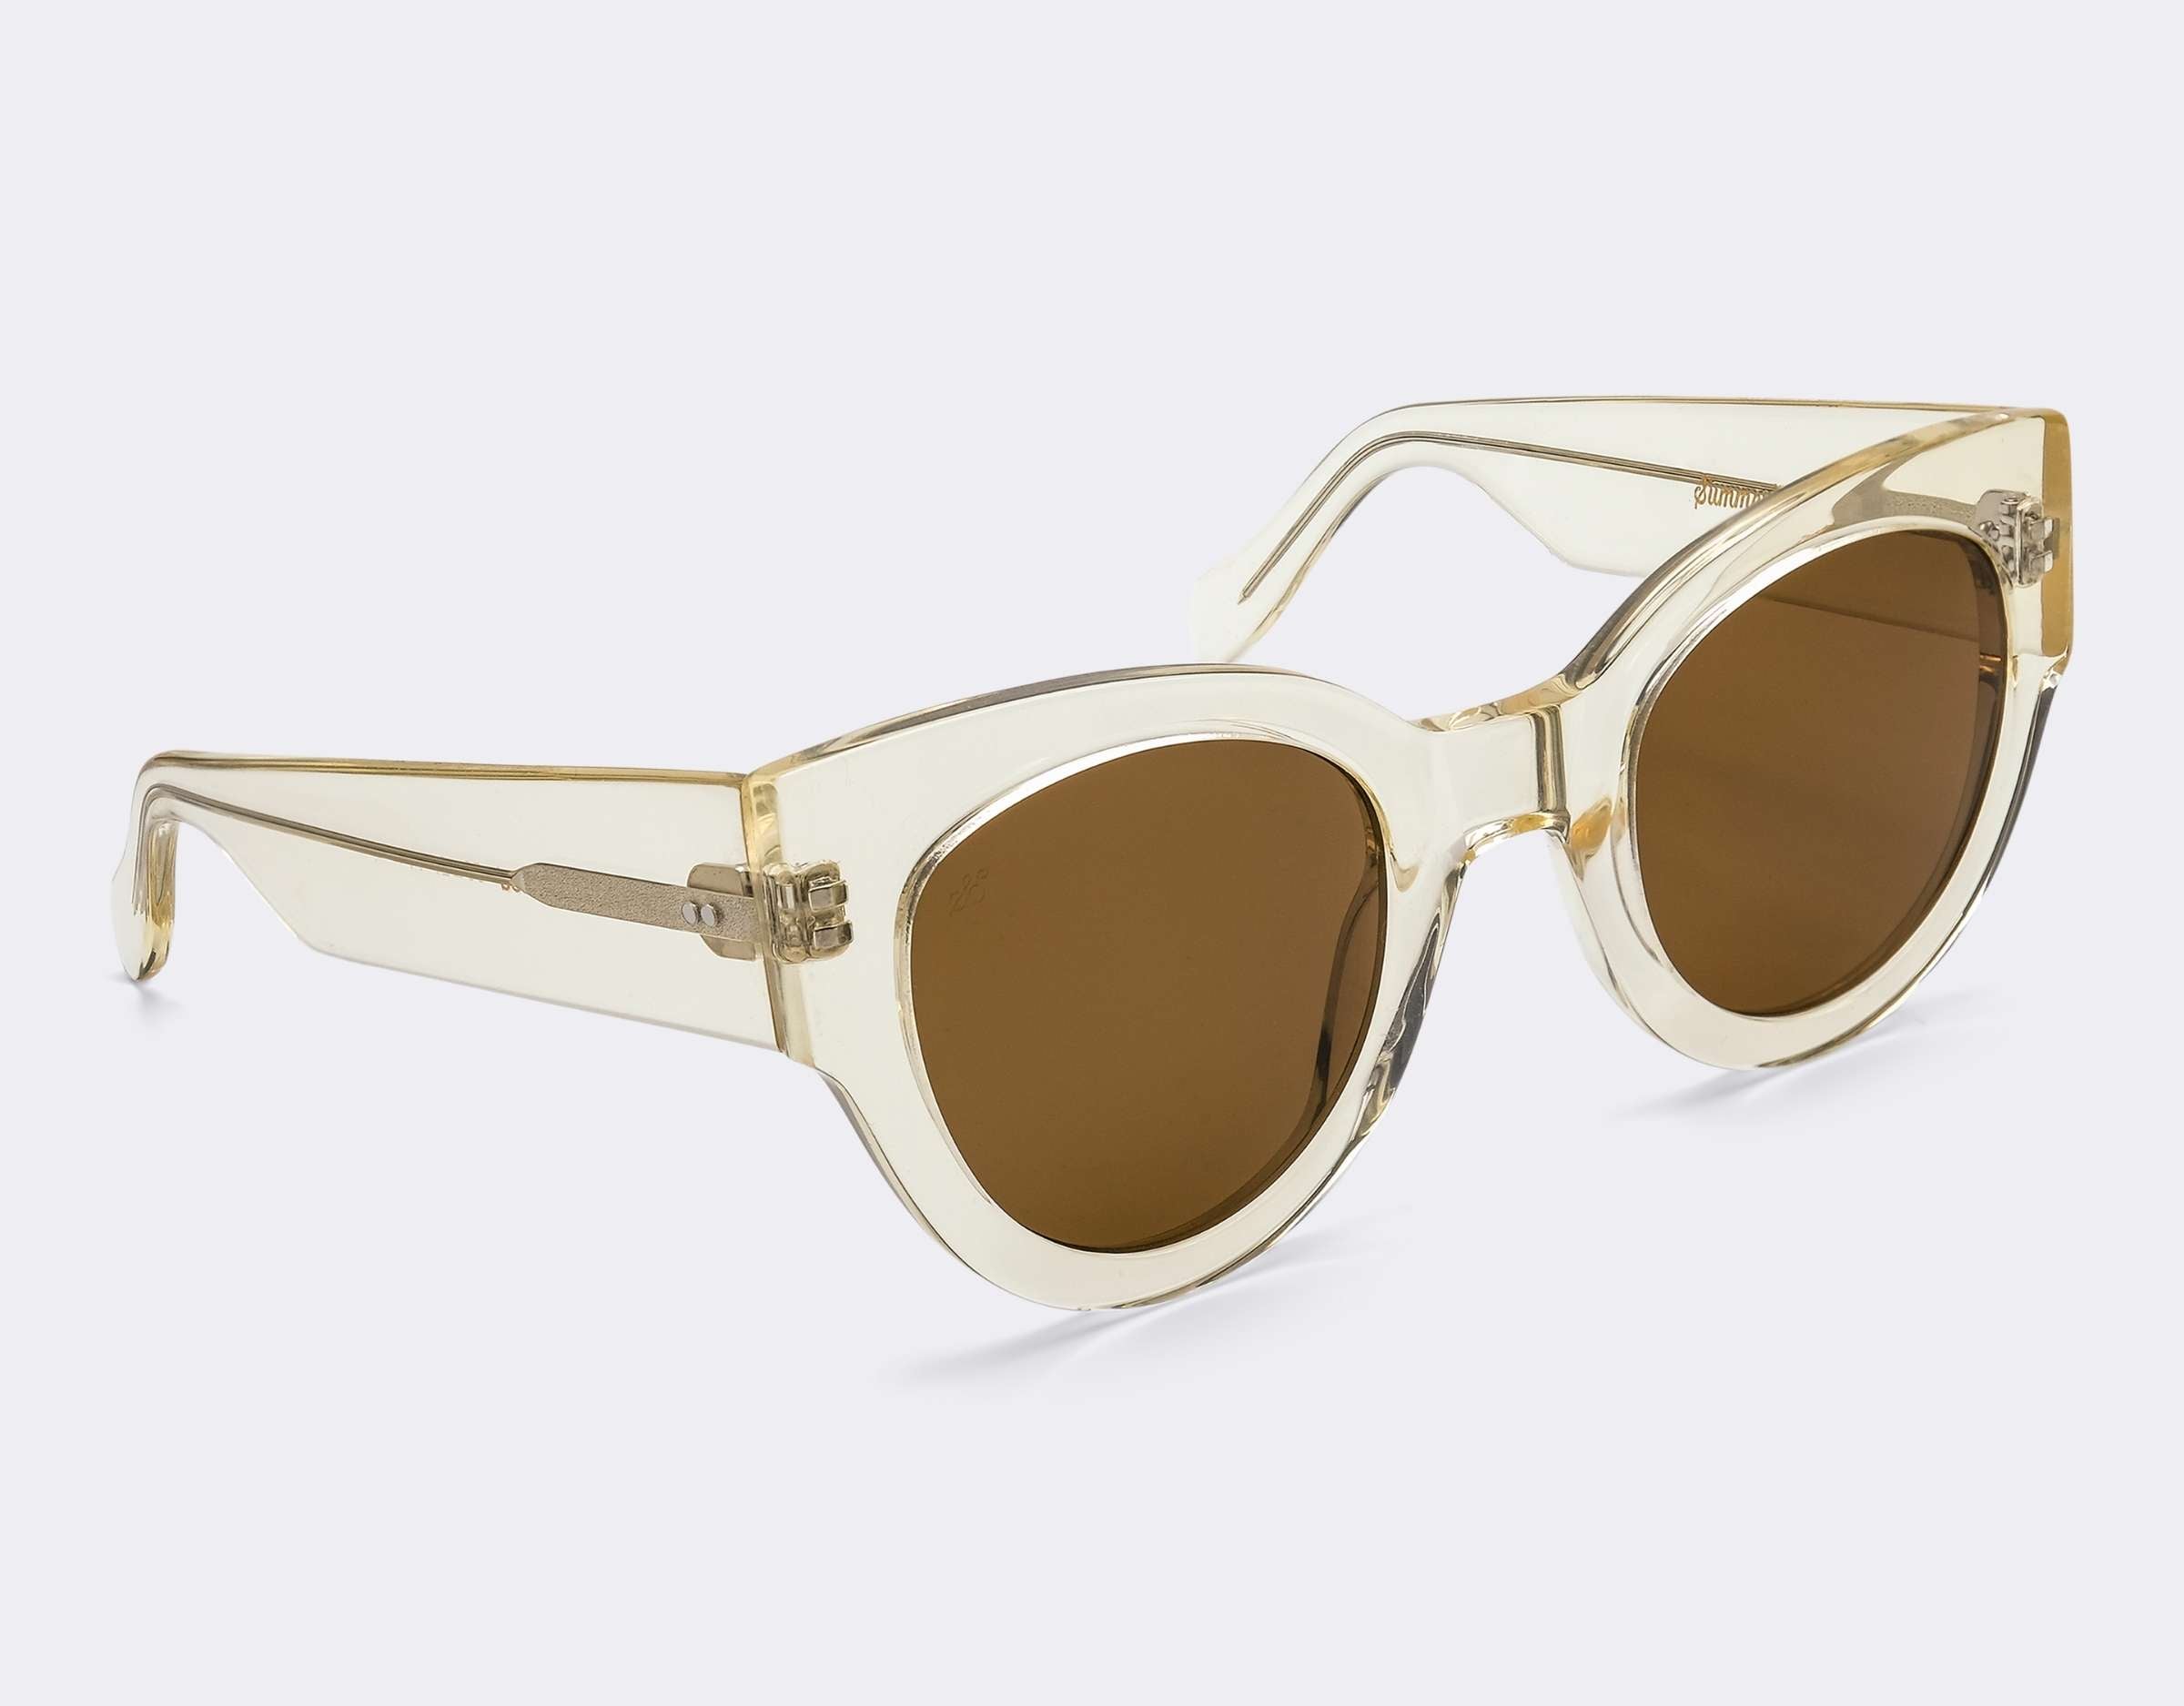 Oasis Polarised Sunglasses SummerEyez 